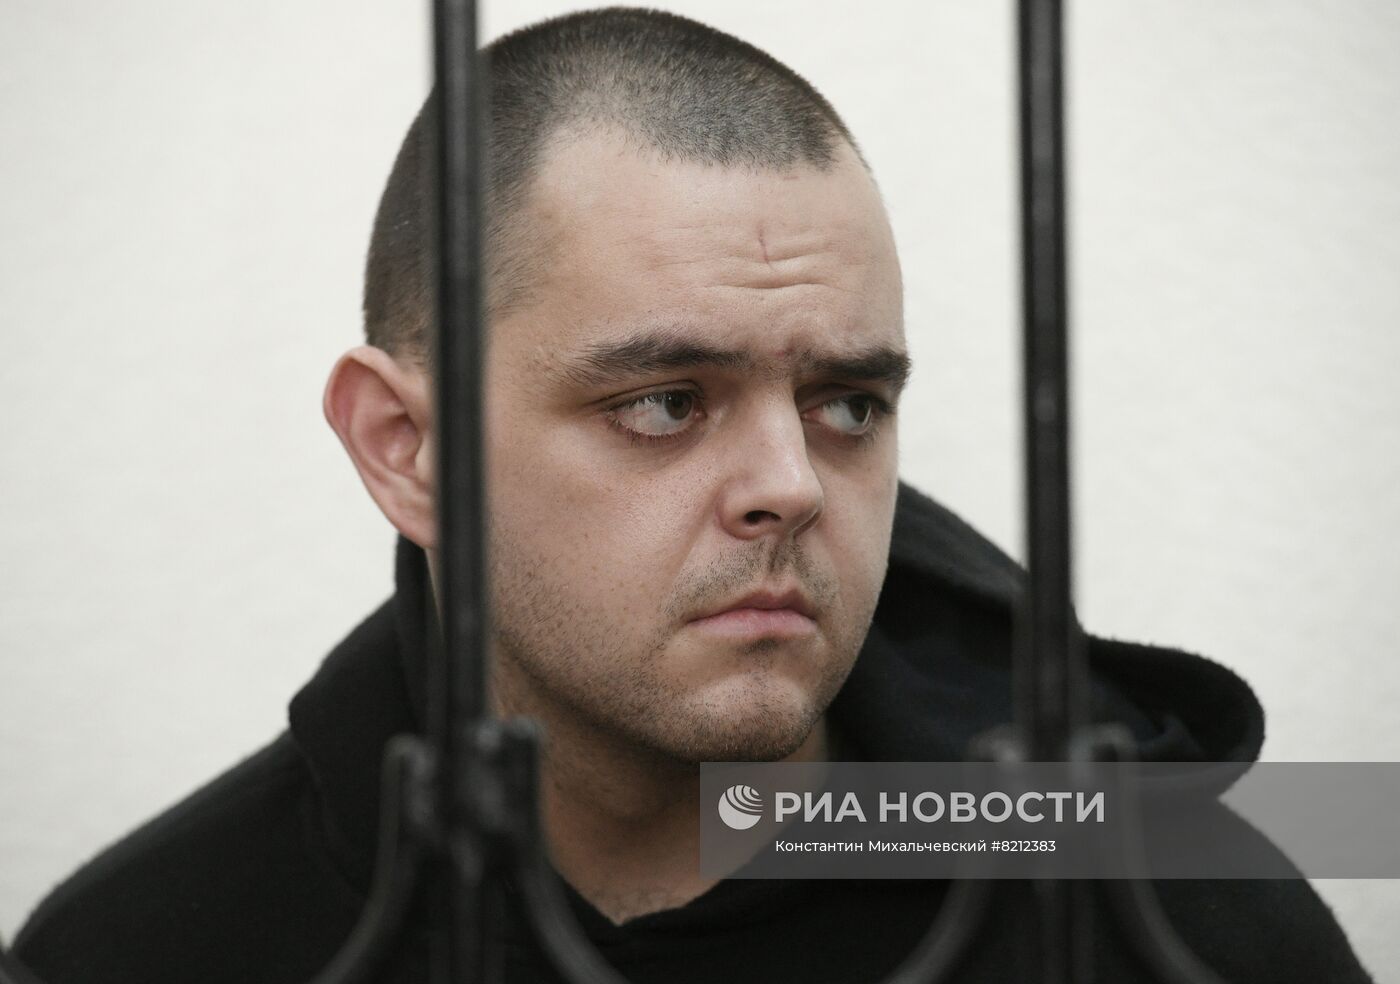 Верховный суд ДНР приговорил к смертной казни иностранных наемников